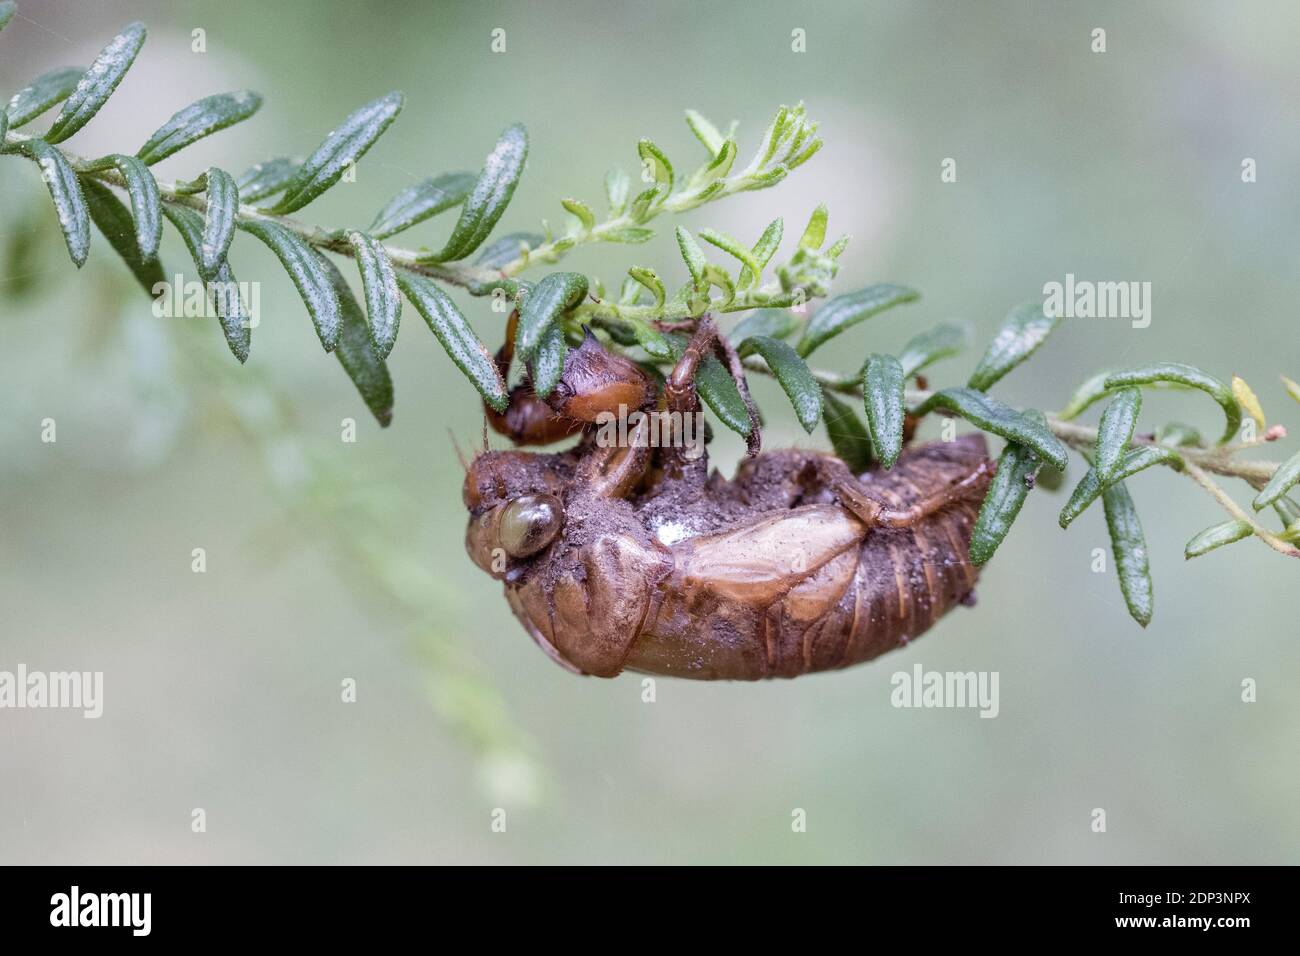 Cicada shell clinging onto tree branch Stock Photo